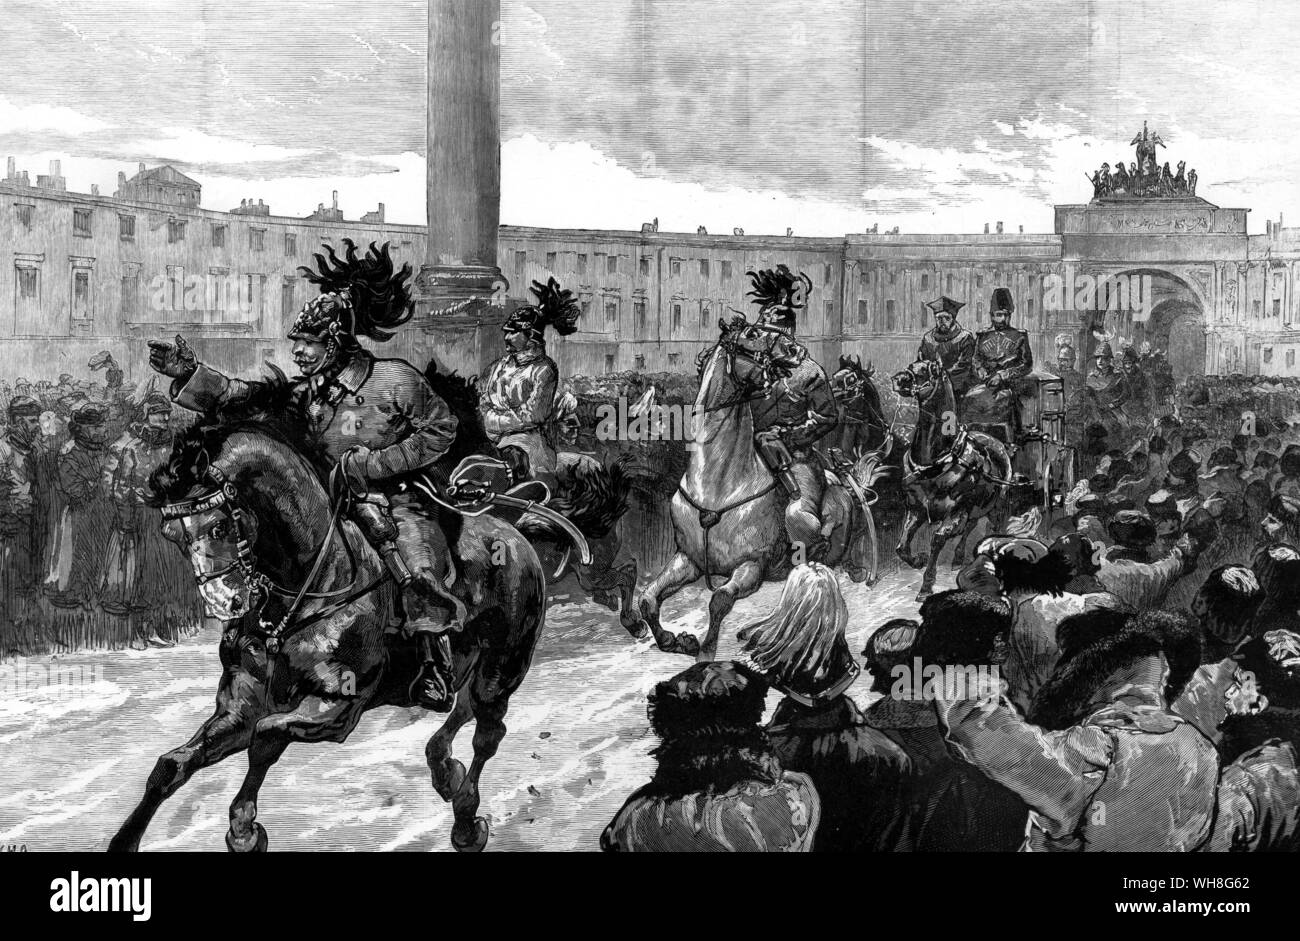 Ankunft des neuen Kaiser und Kaiserin von Russland im Winterpalast, St. Petersburg, 1881. Alexander III. (1845-1894) regierte als Kaiser von Russland vom 14. März 1881 bis zu seinem Tod im Jahr 1894. . Stockfoto